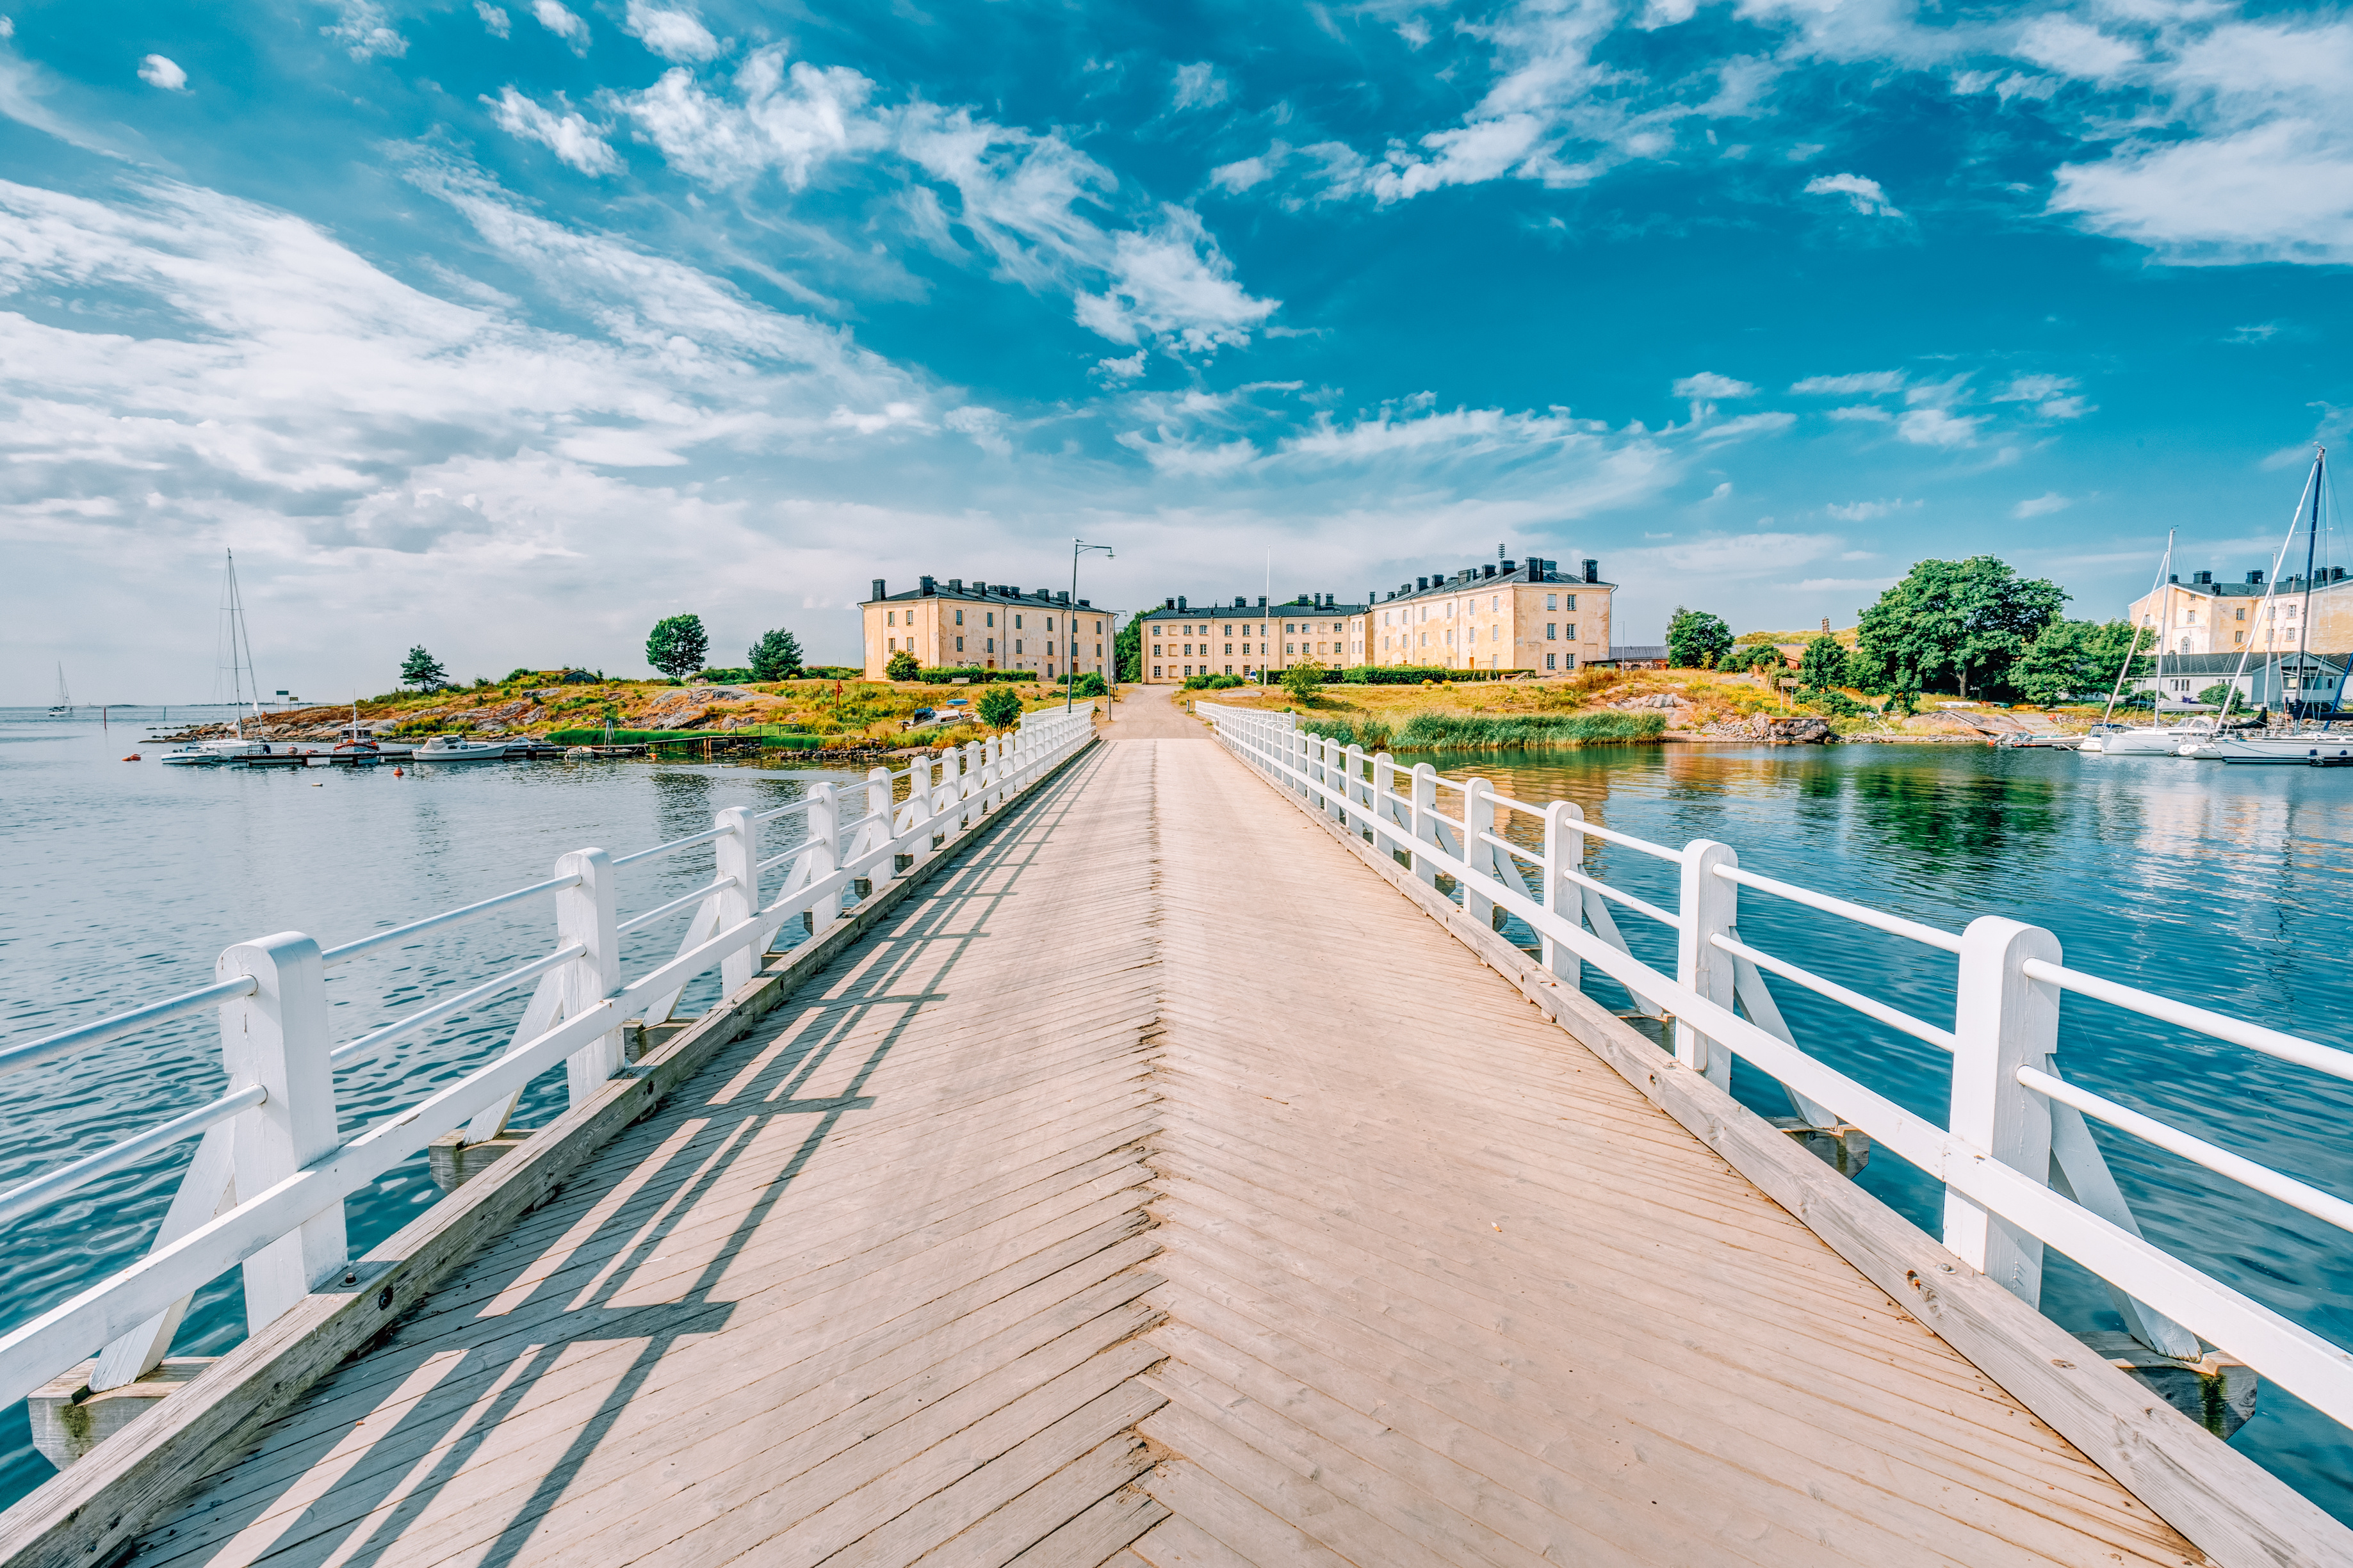 通往芬兰堡要塞岛的一座桥的全景照片